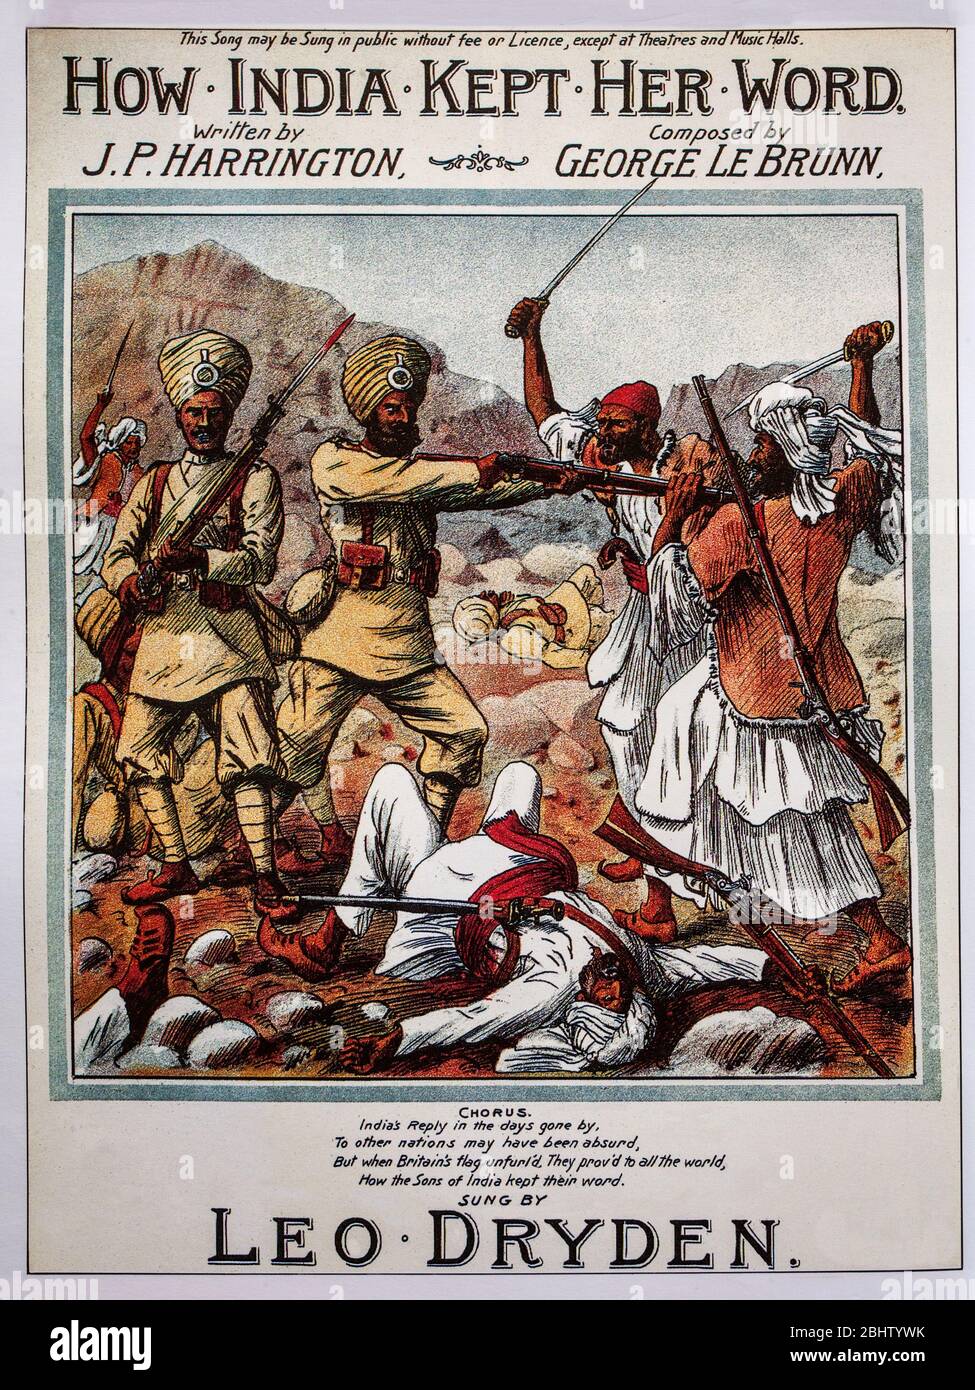 Notencover des 19. Jahrhunderts, das die Loyalität indischer Soldaten unter britischem Kommando während des britischen Raj preist. Stockfoto